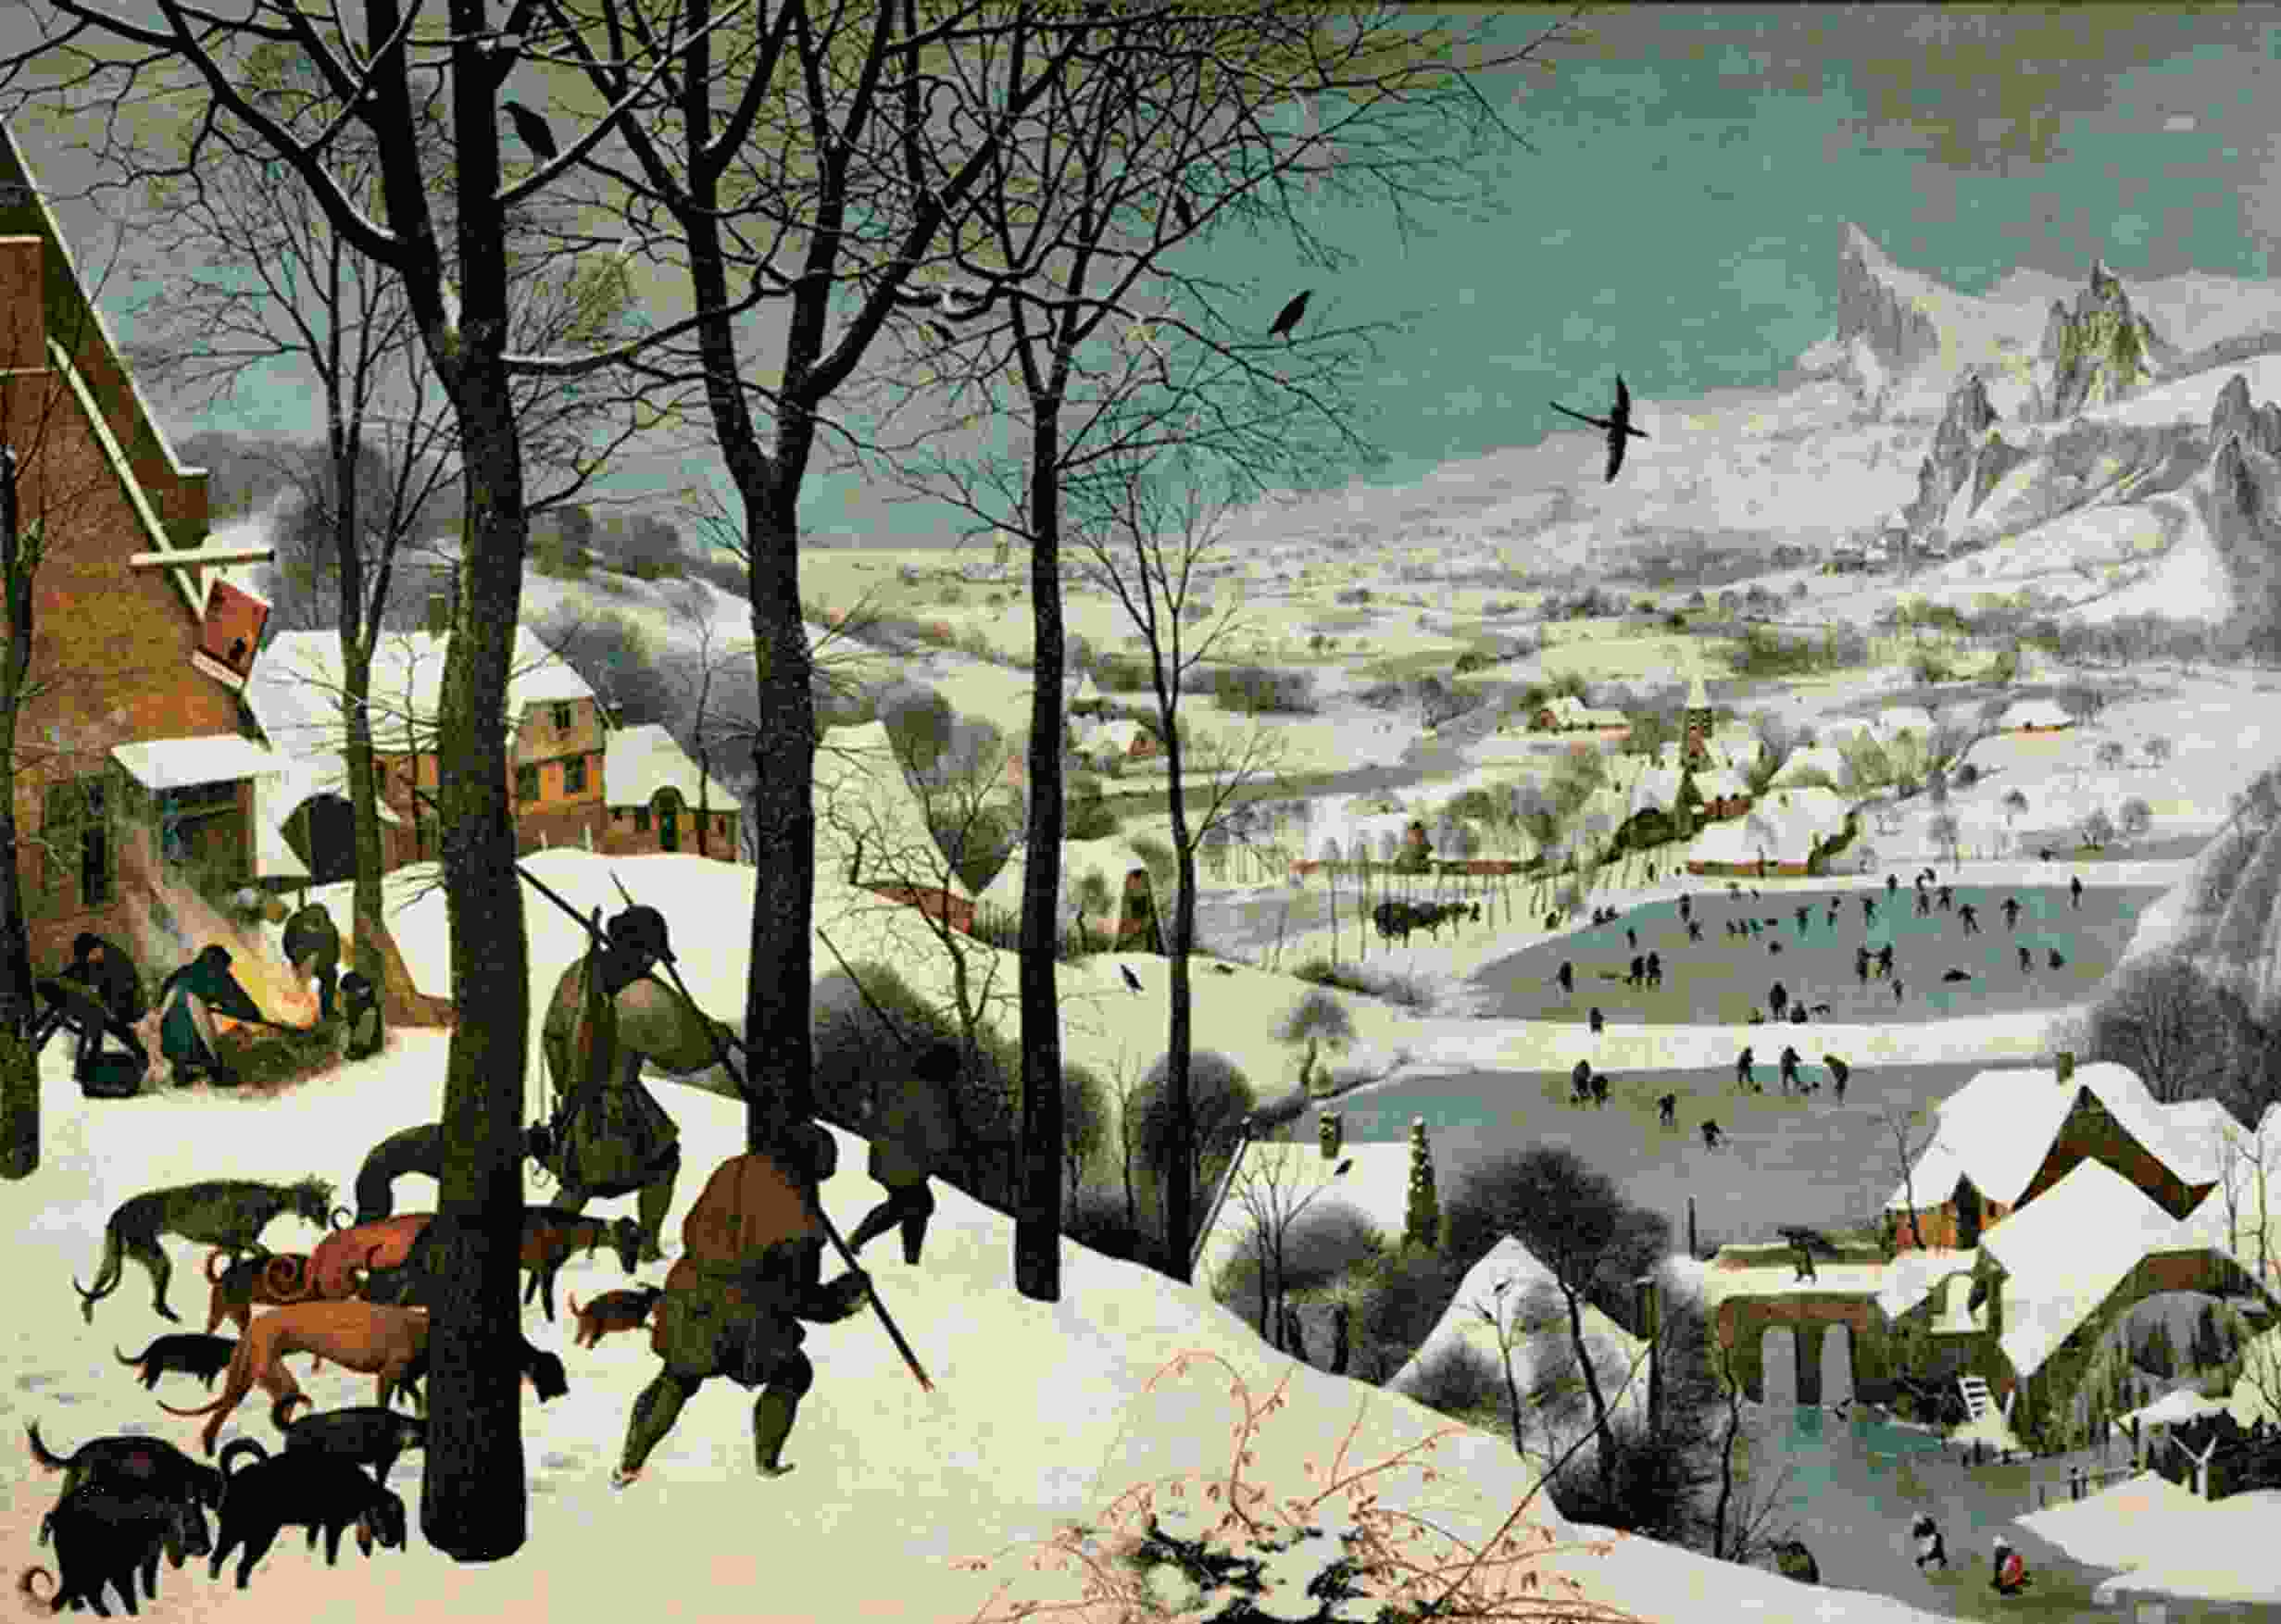 Pieter Bruegel’s Hunters in the Snow of 1565